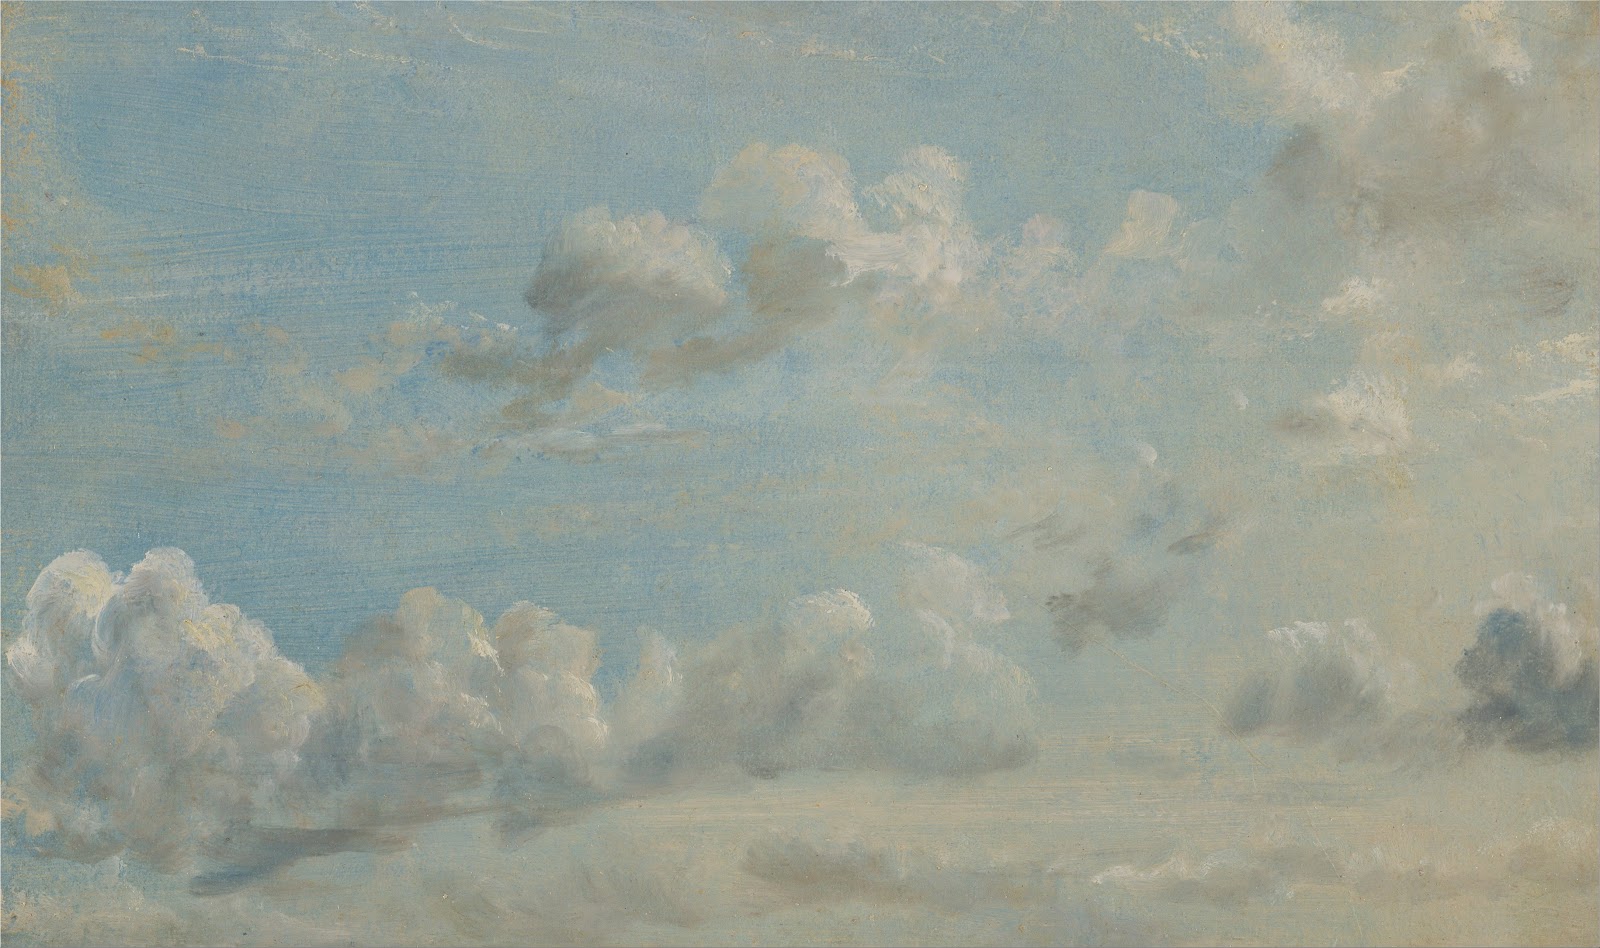 John+Constable-1776-1837 (48).jpg